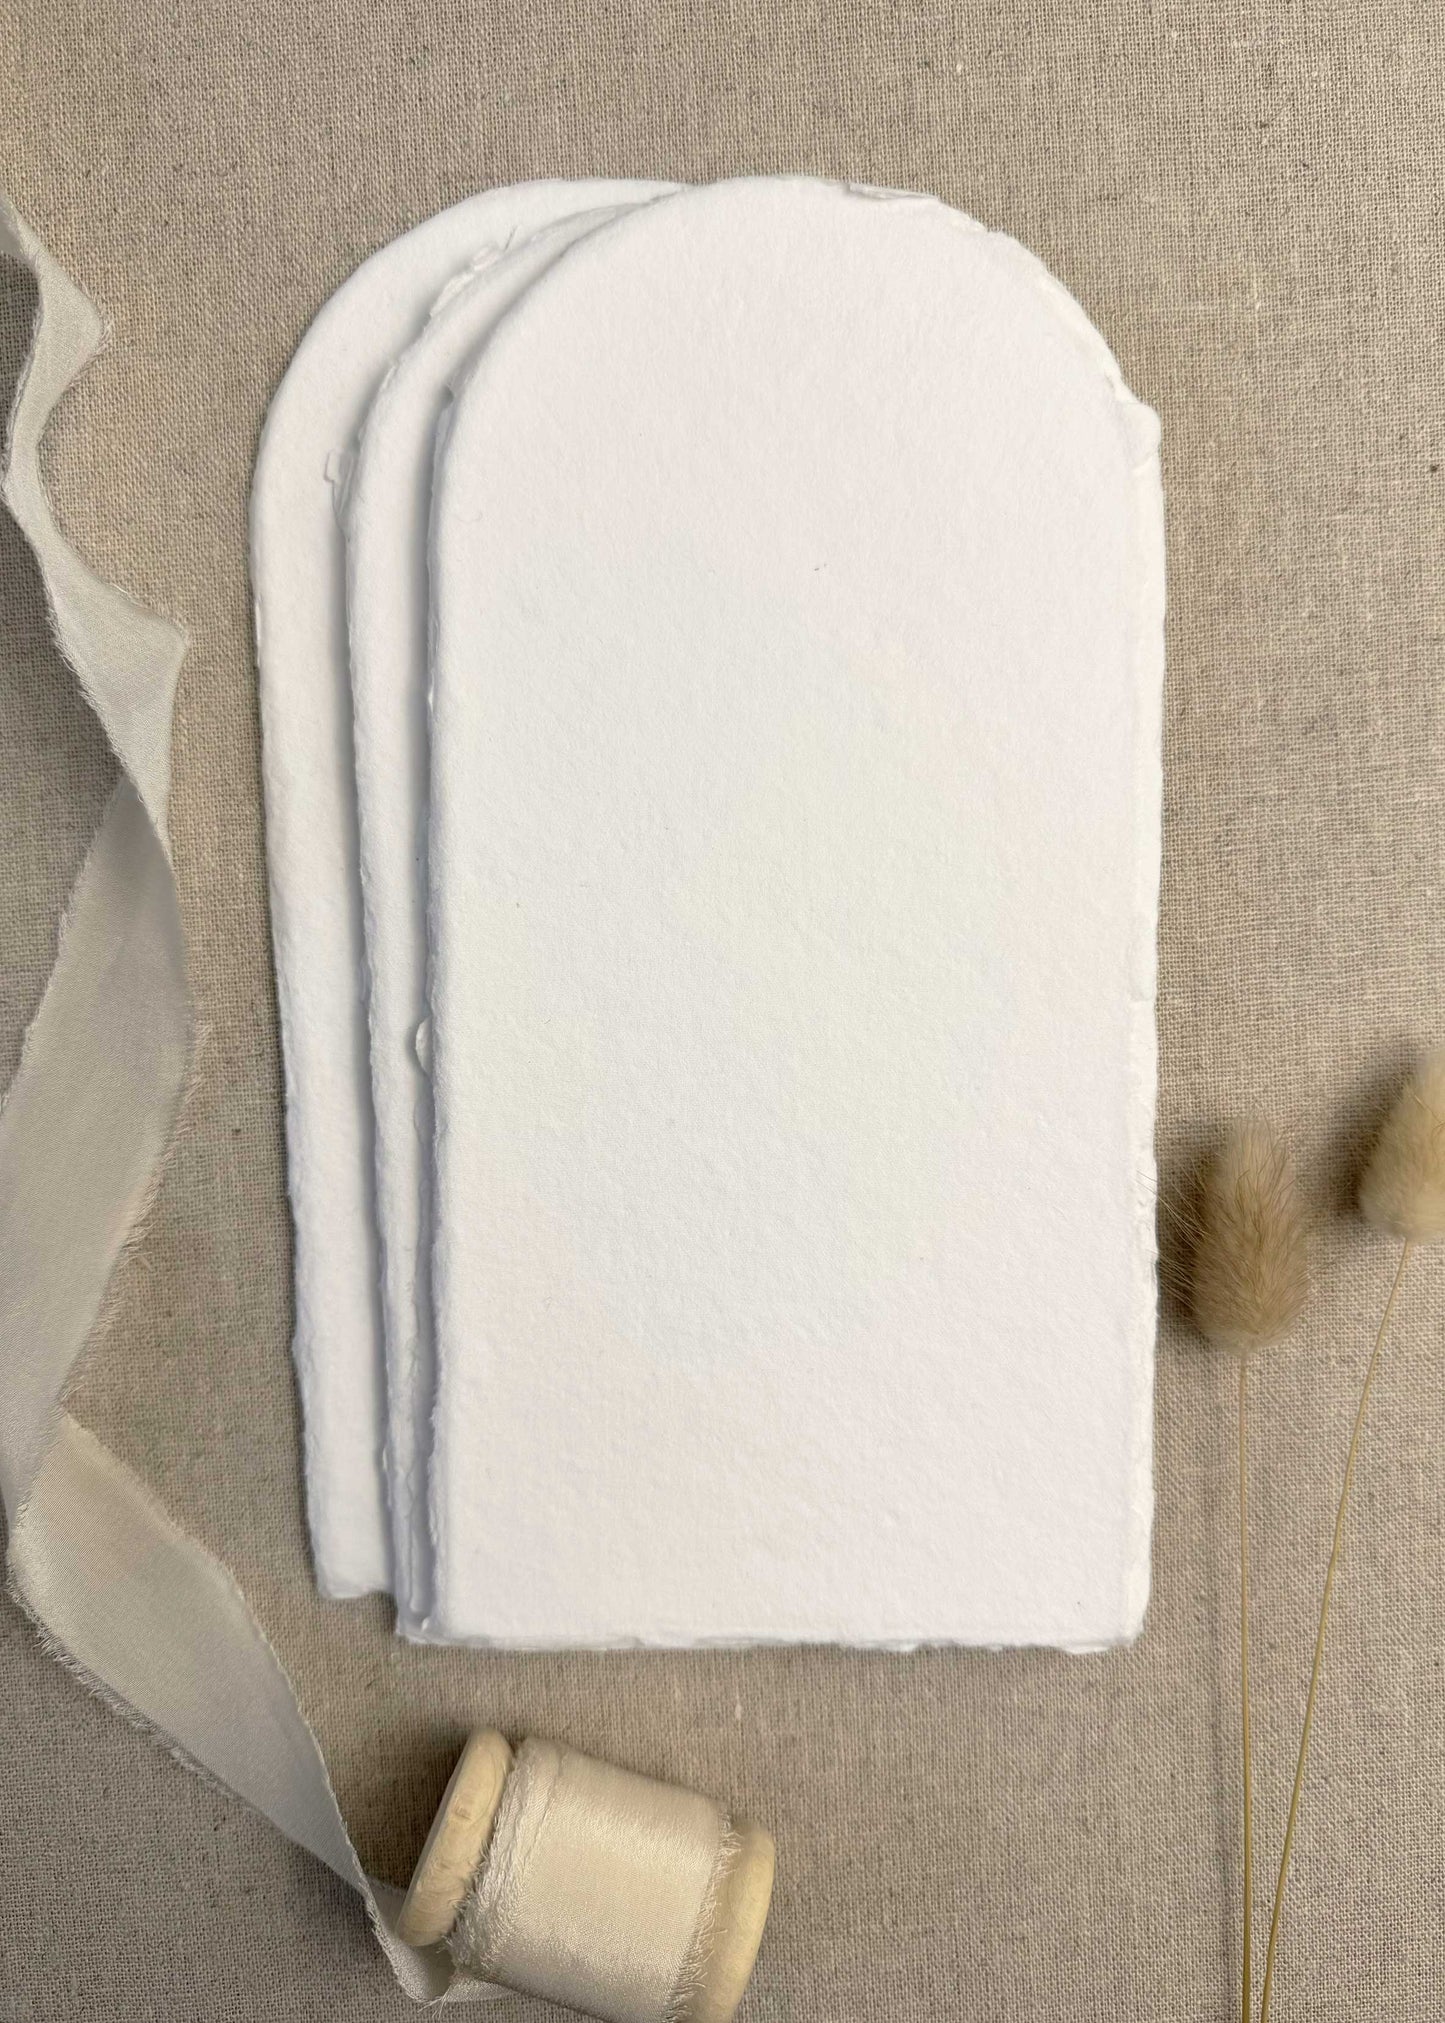 White Handmade Paper